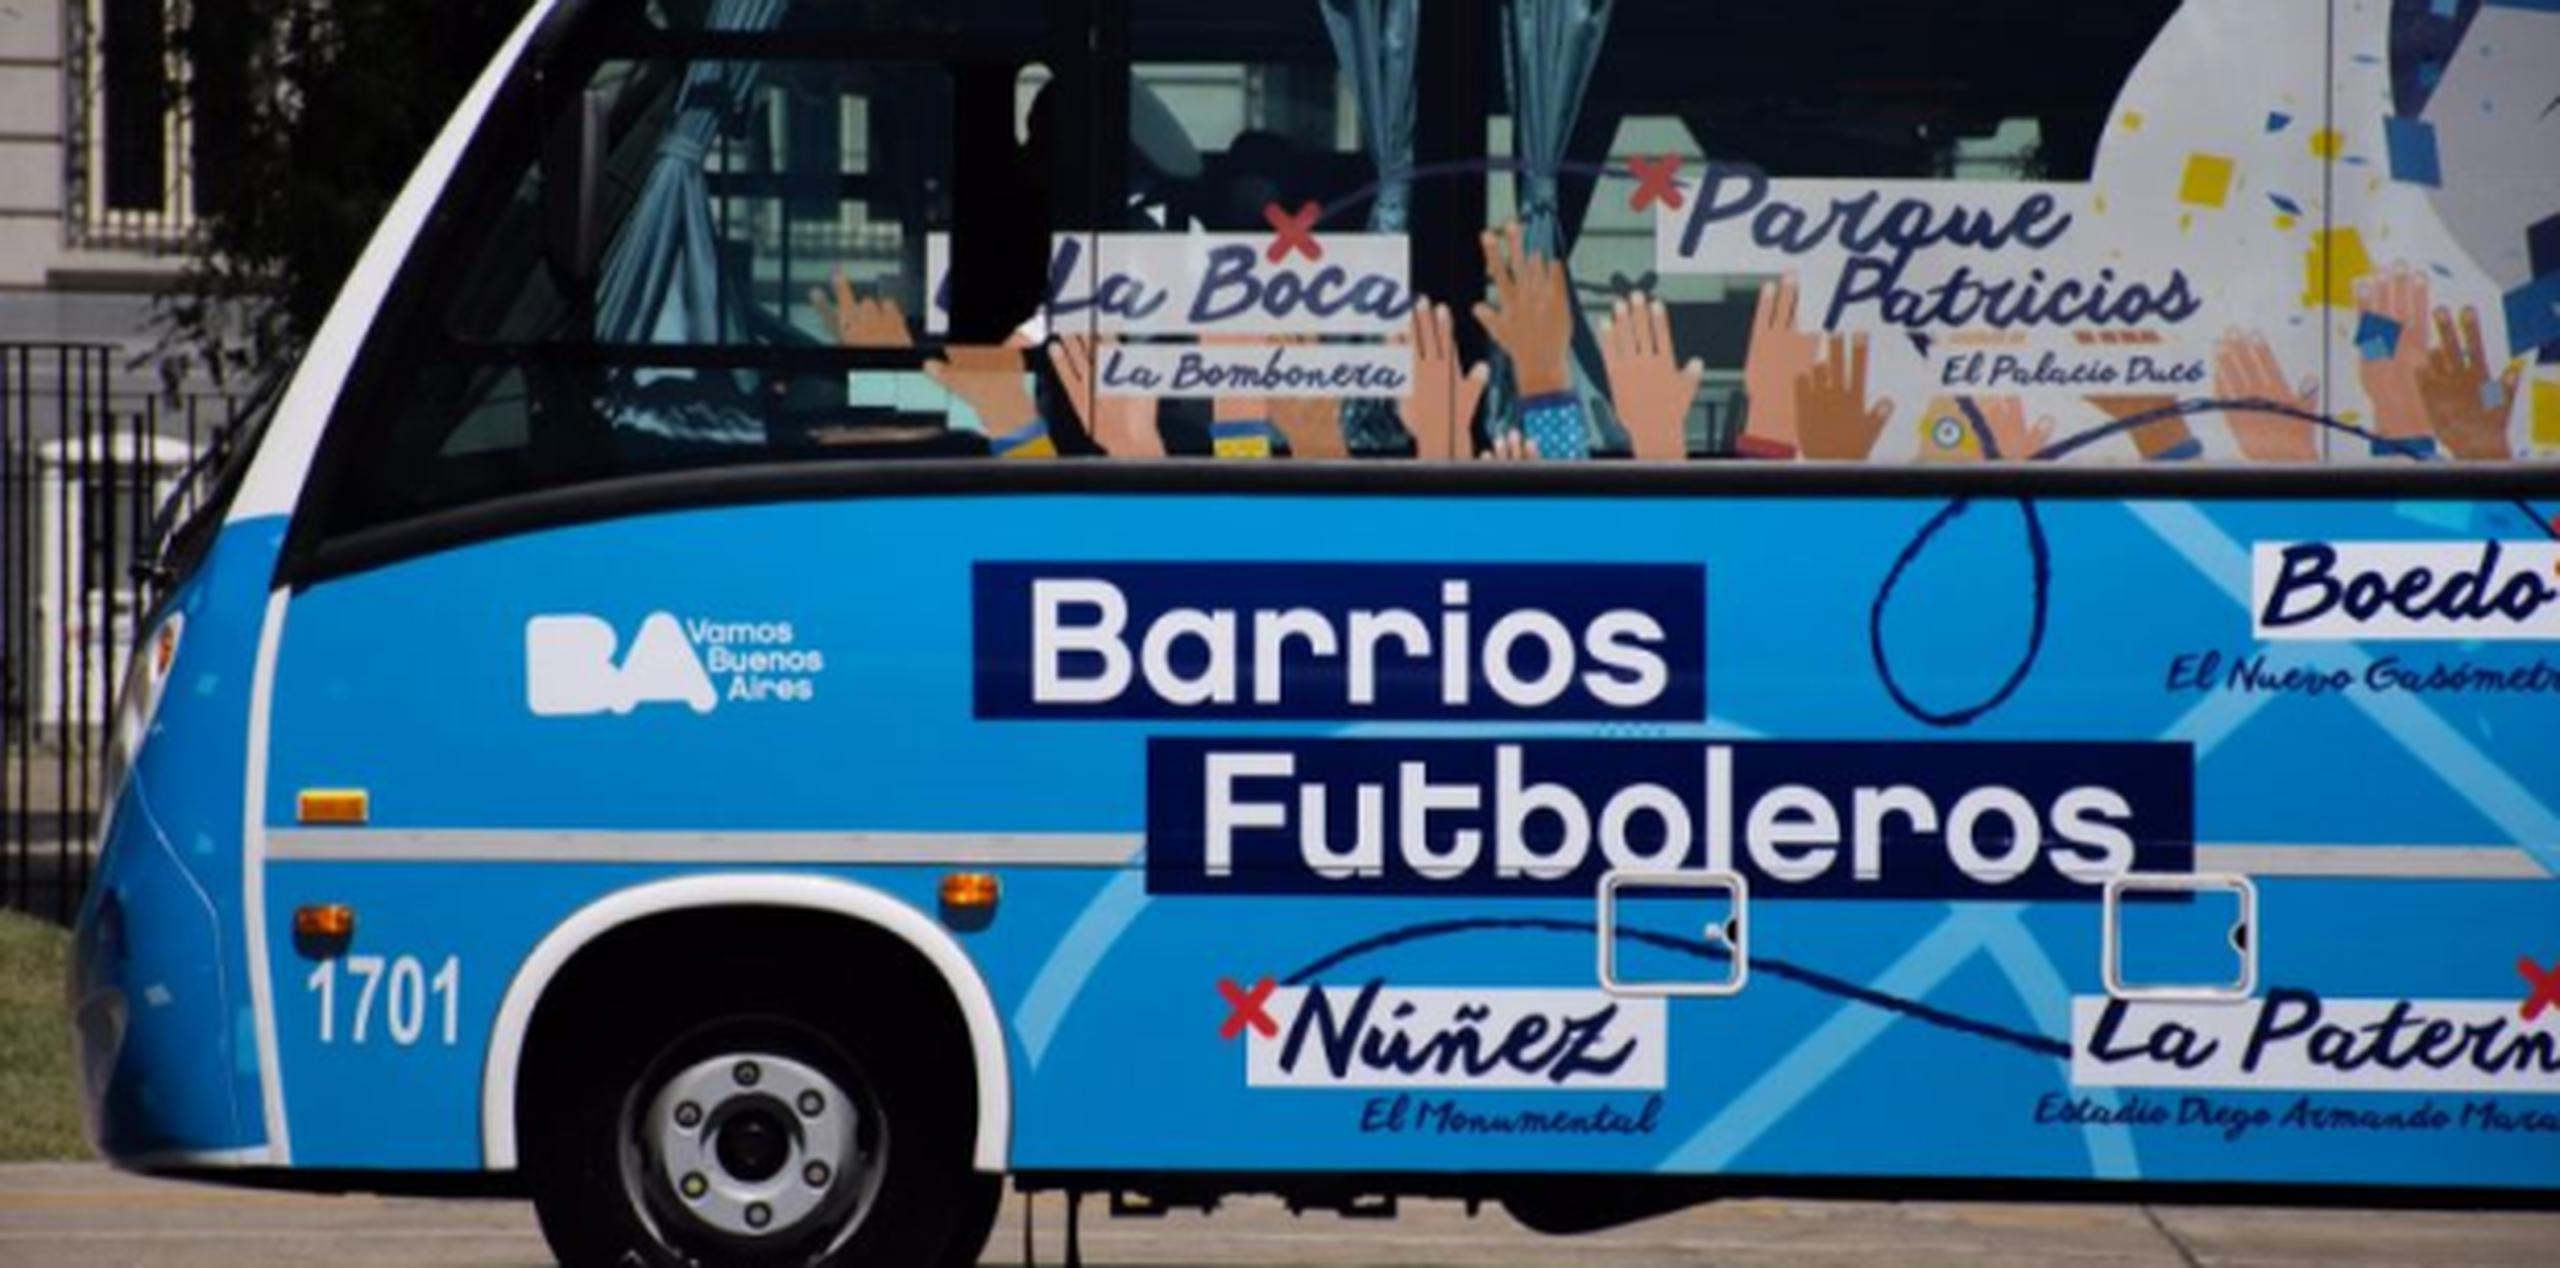 La iniciativa se presentó hoy de manera oficial y el lunes ya estará disponible para los turistas que visiten la capital argentina y que quieran conocer la versión más futbolera de la ciudad porteña. (Twitter)